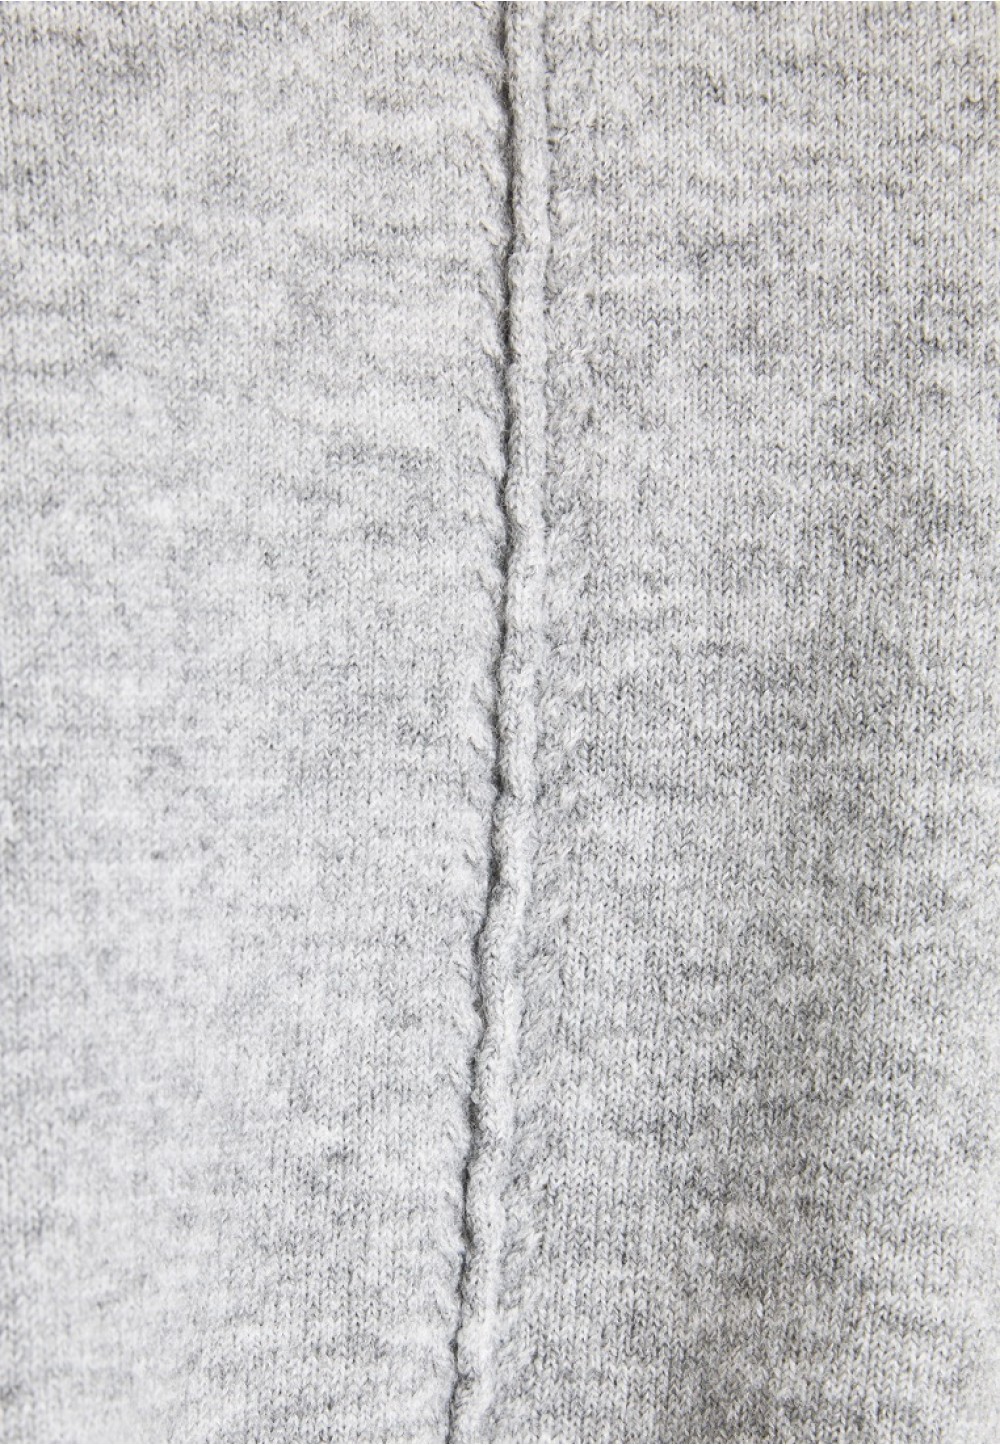 Женский серый свитер с длинным рукавом